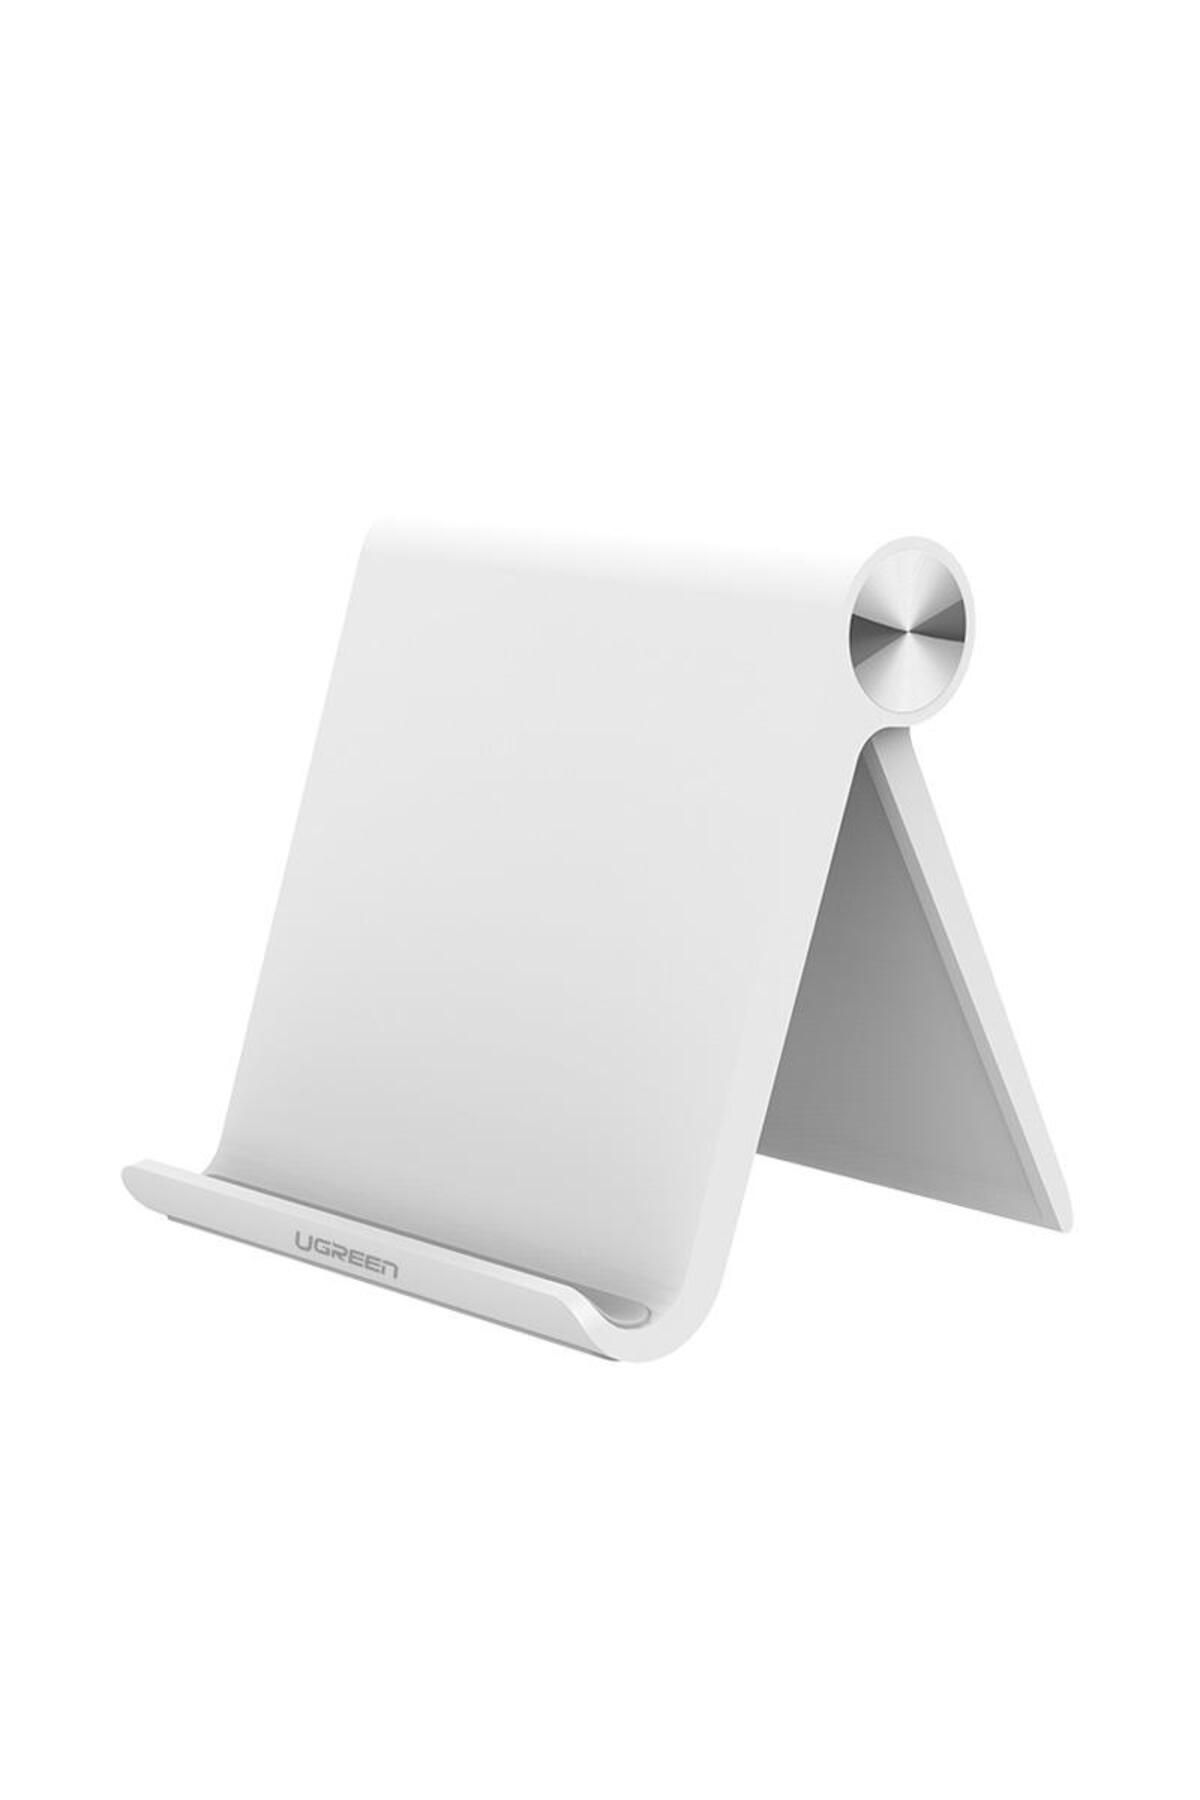 Ugreen Çok Açılı Masaüstü Tablet Telefon Standı Beyaz